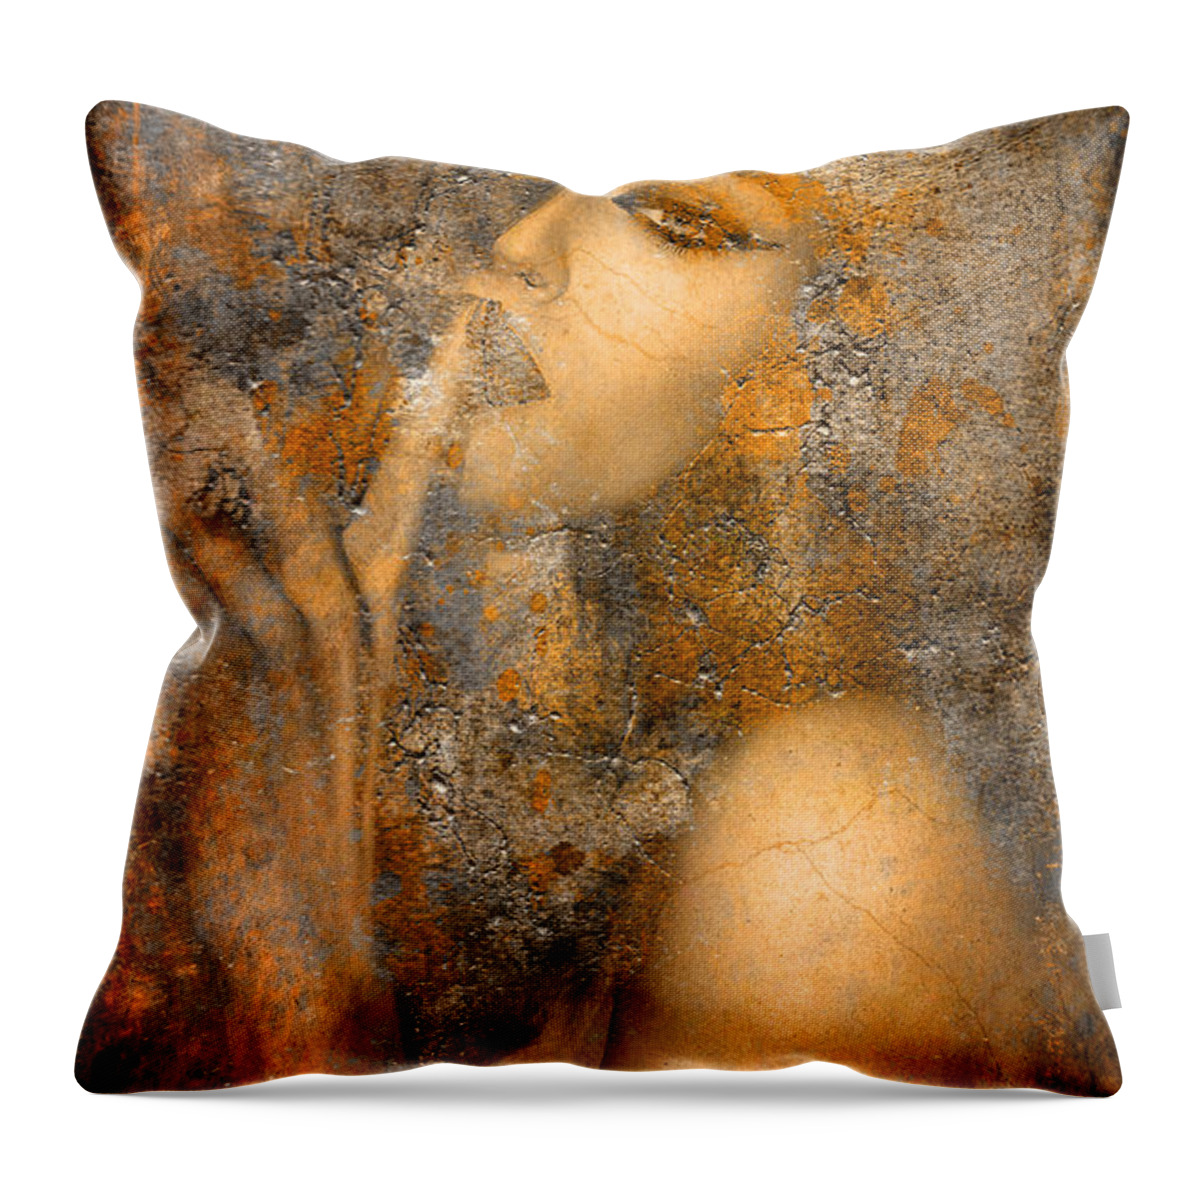 Hush Throw Pillow featuring the digital art Golden Hush by Greg Sharpe